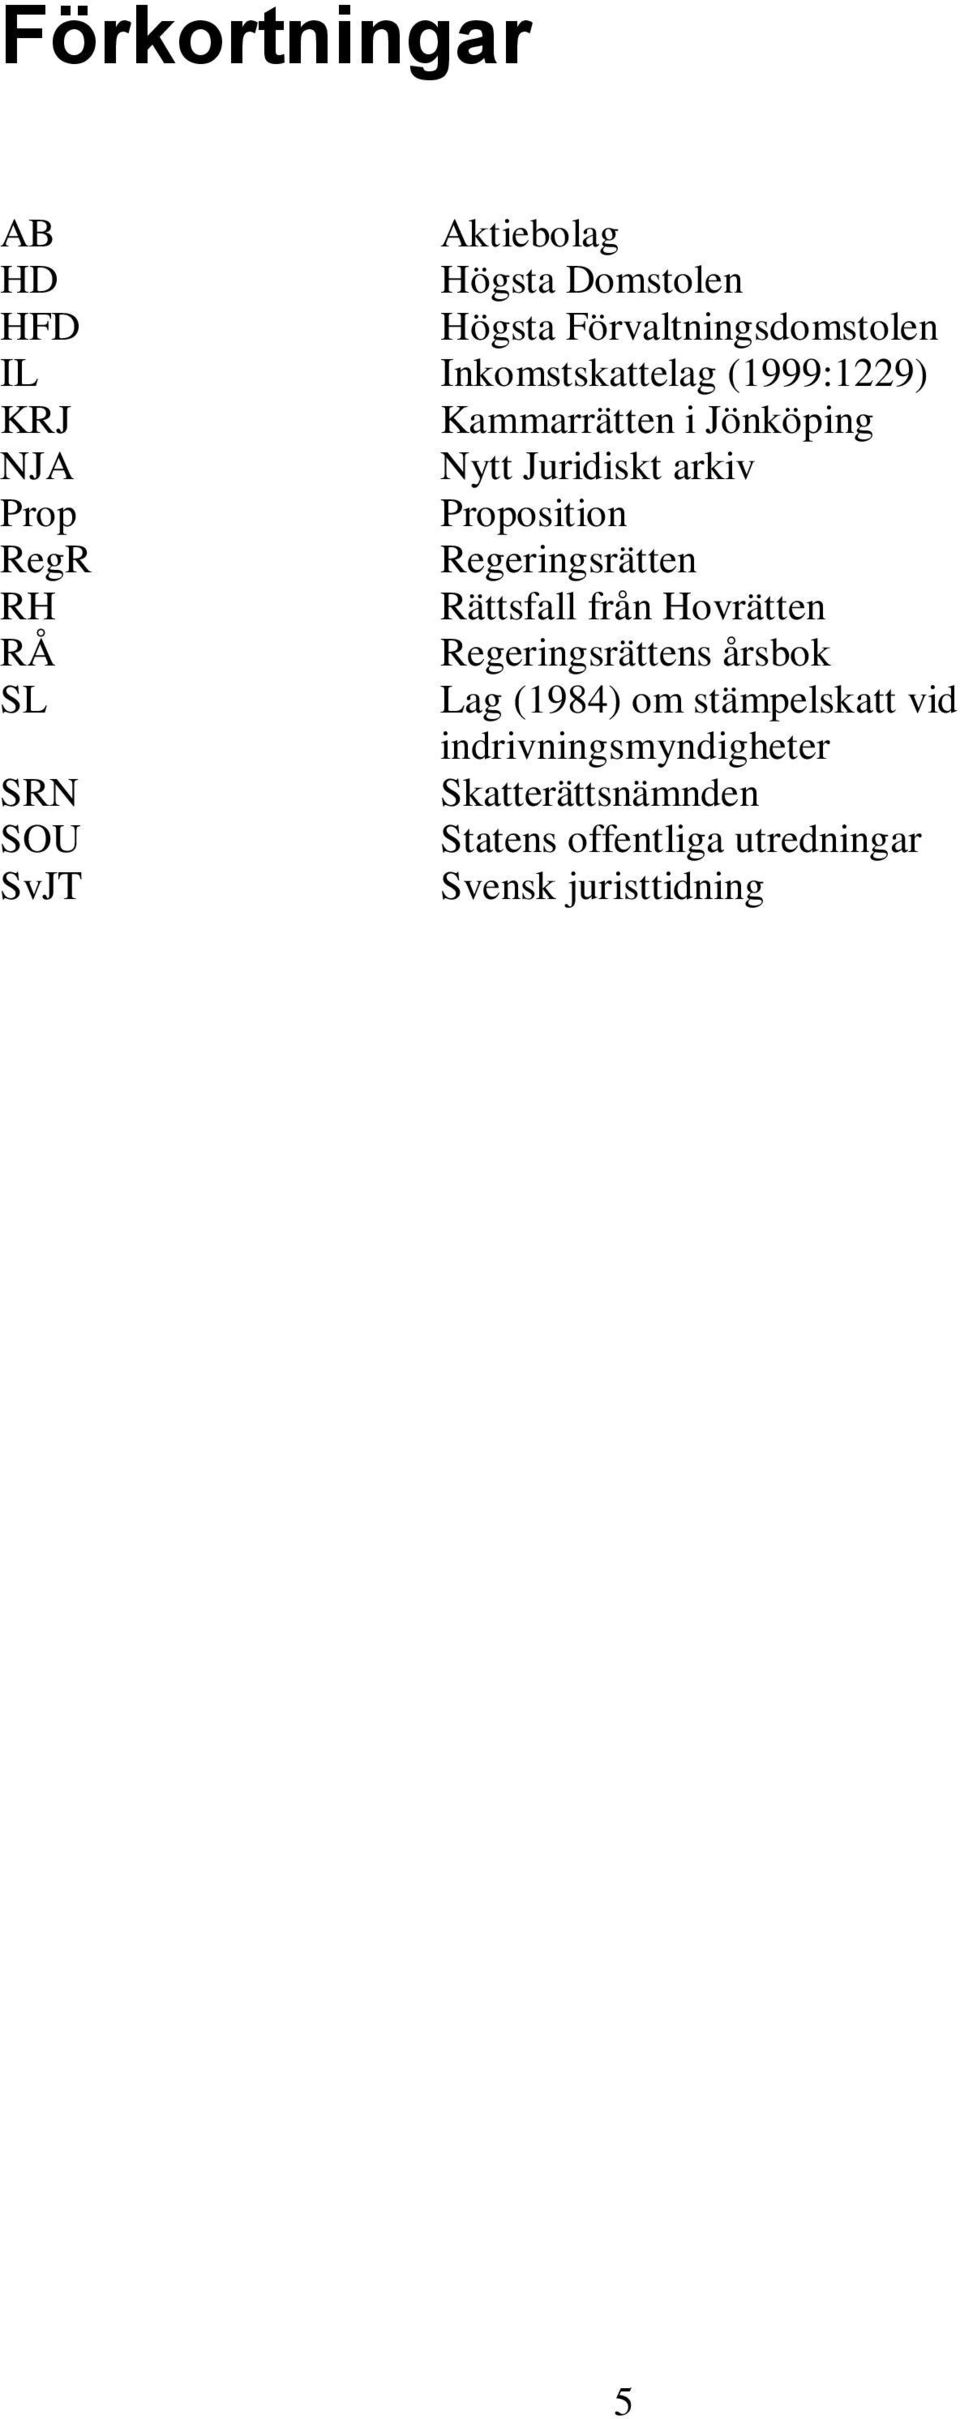 Regeringsrätten RH Rättsfall från Hovrätten RÅ Regeringsrättens årsbok SL Lag (1984) om stämpelskatt